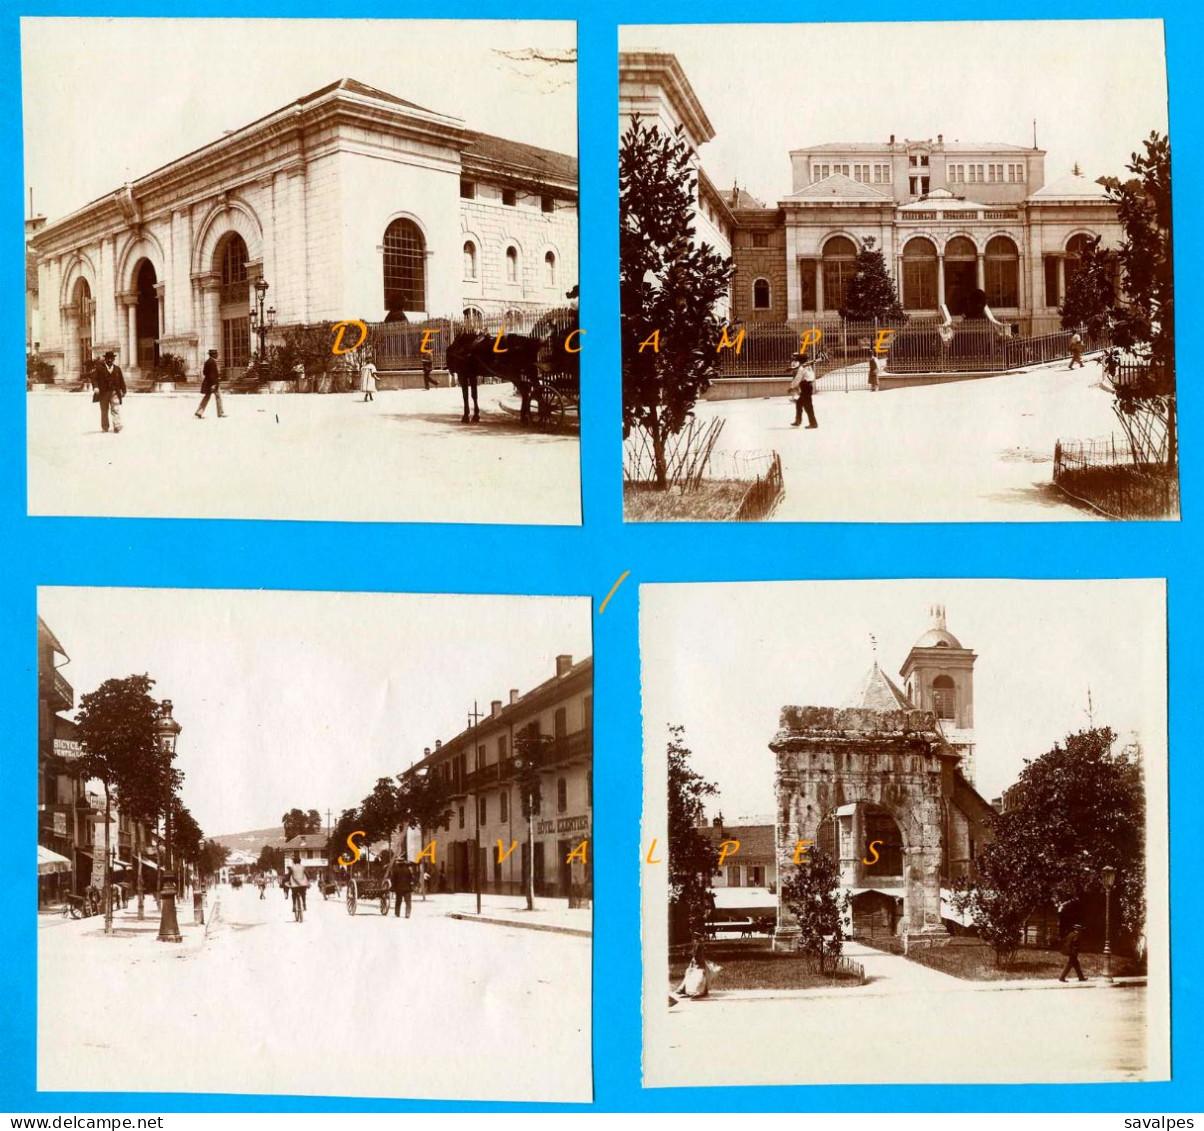 Savoie 1897 * Aix-les-Bains, Thermes, Arc Campanus, Rue De Genève Hôtel Exertier * 4 Photos Originales - Lieux